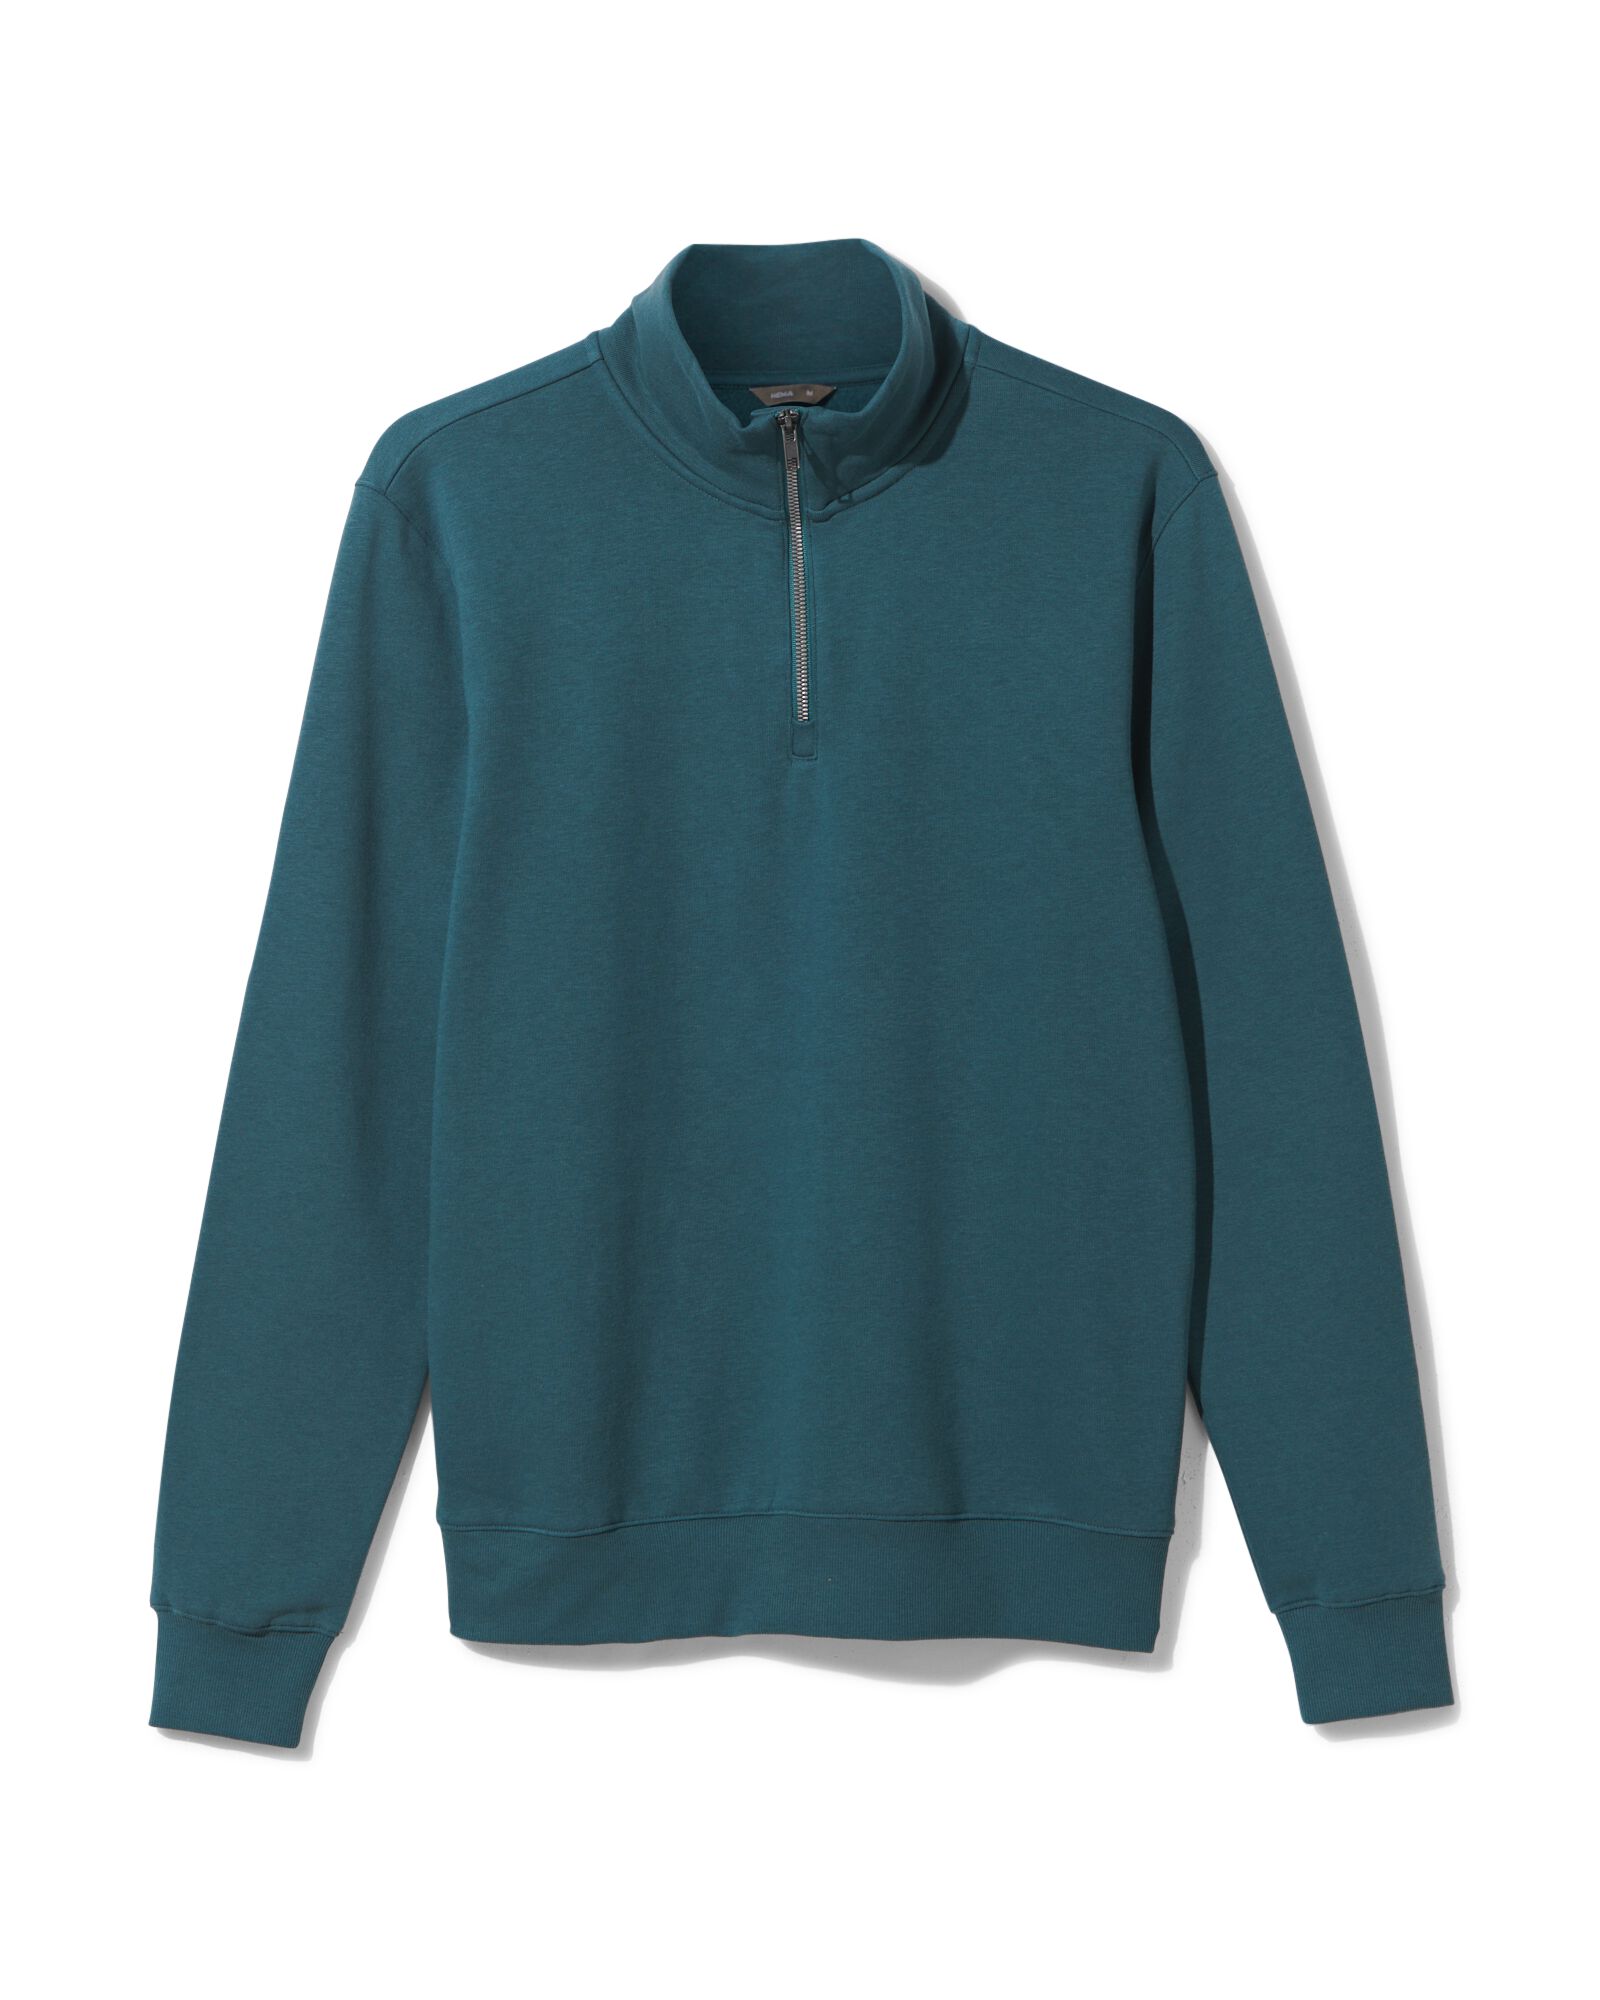 heren sweater met rits blauw XL - 2101423 - HEMA